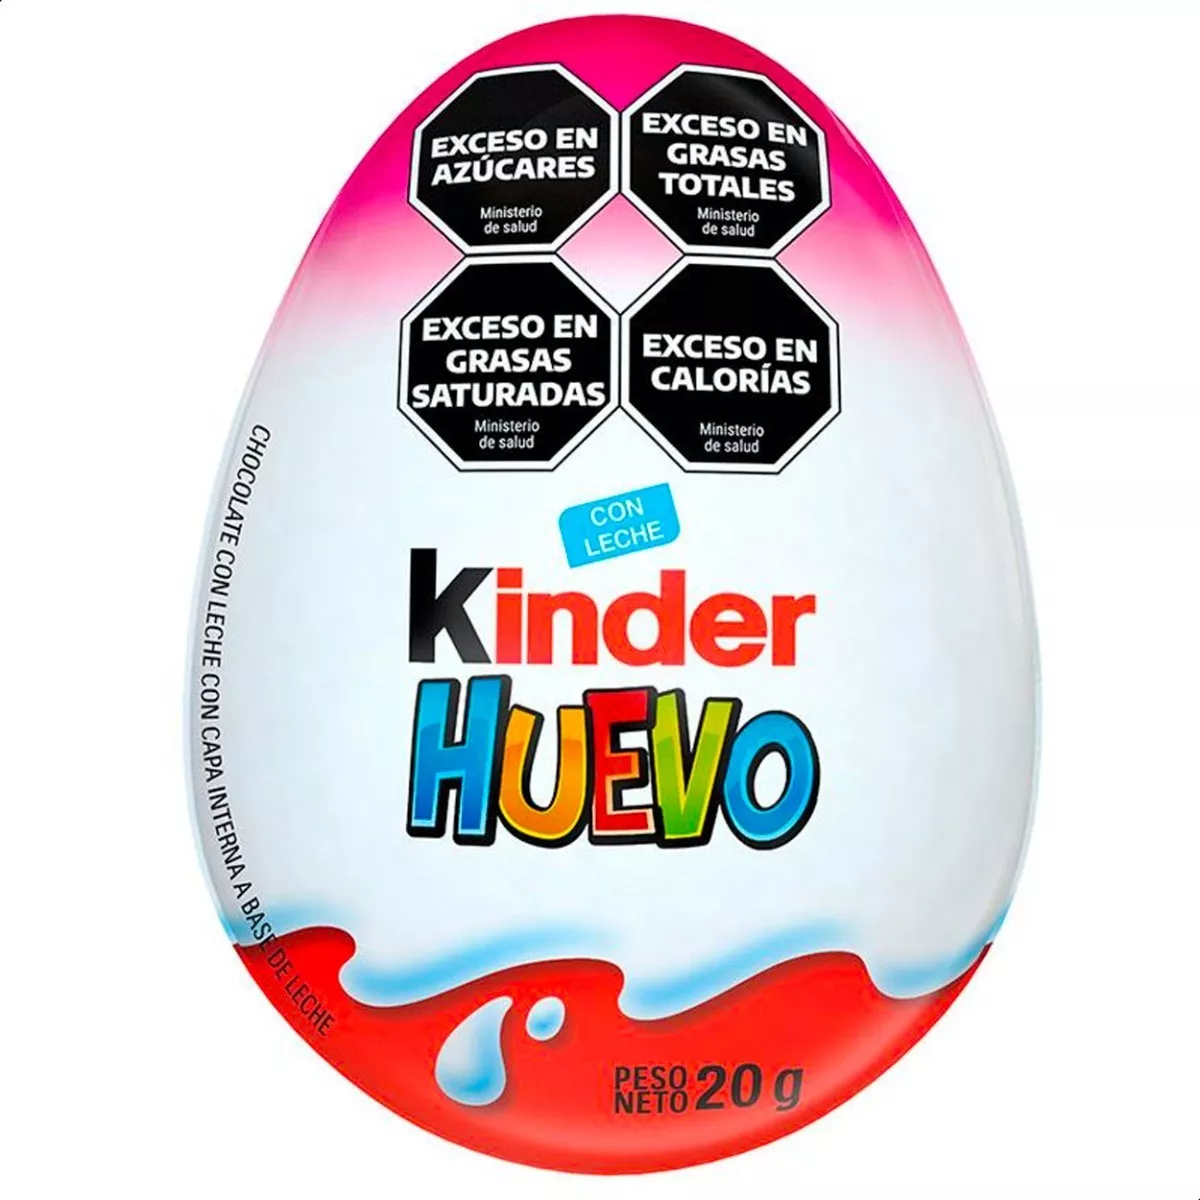 Primera imagen para búsqueda de huevo kinder